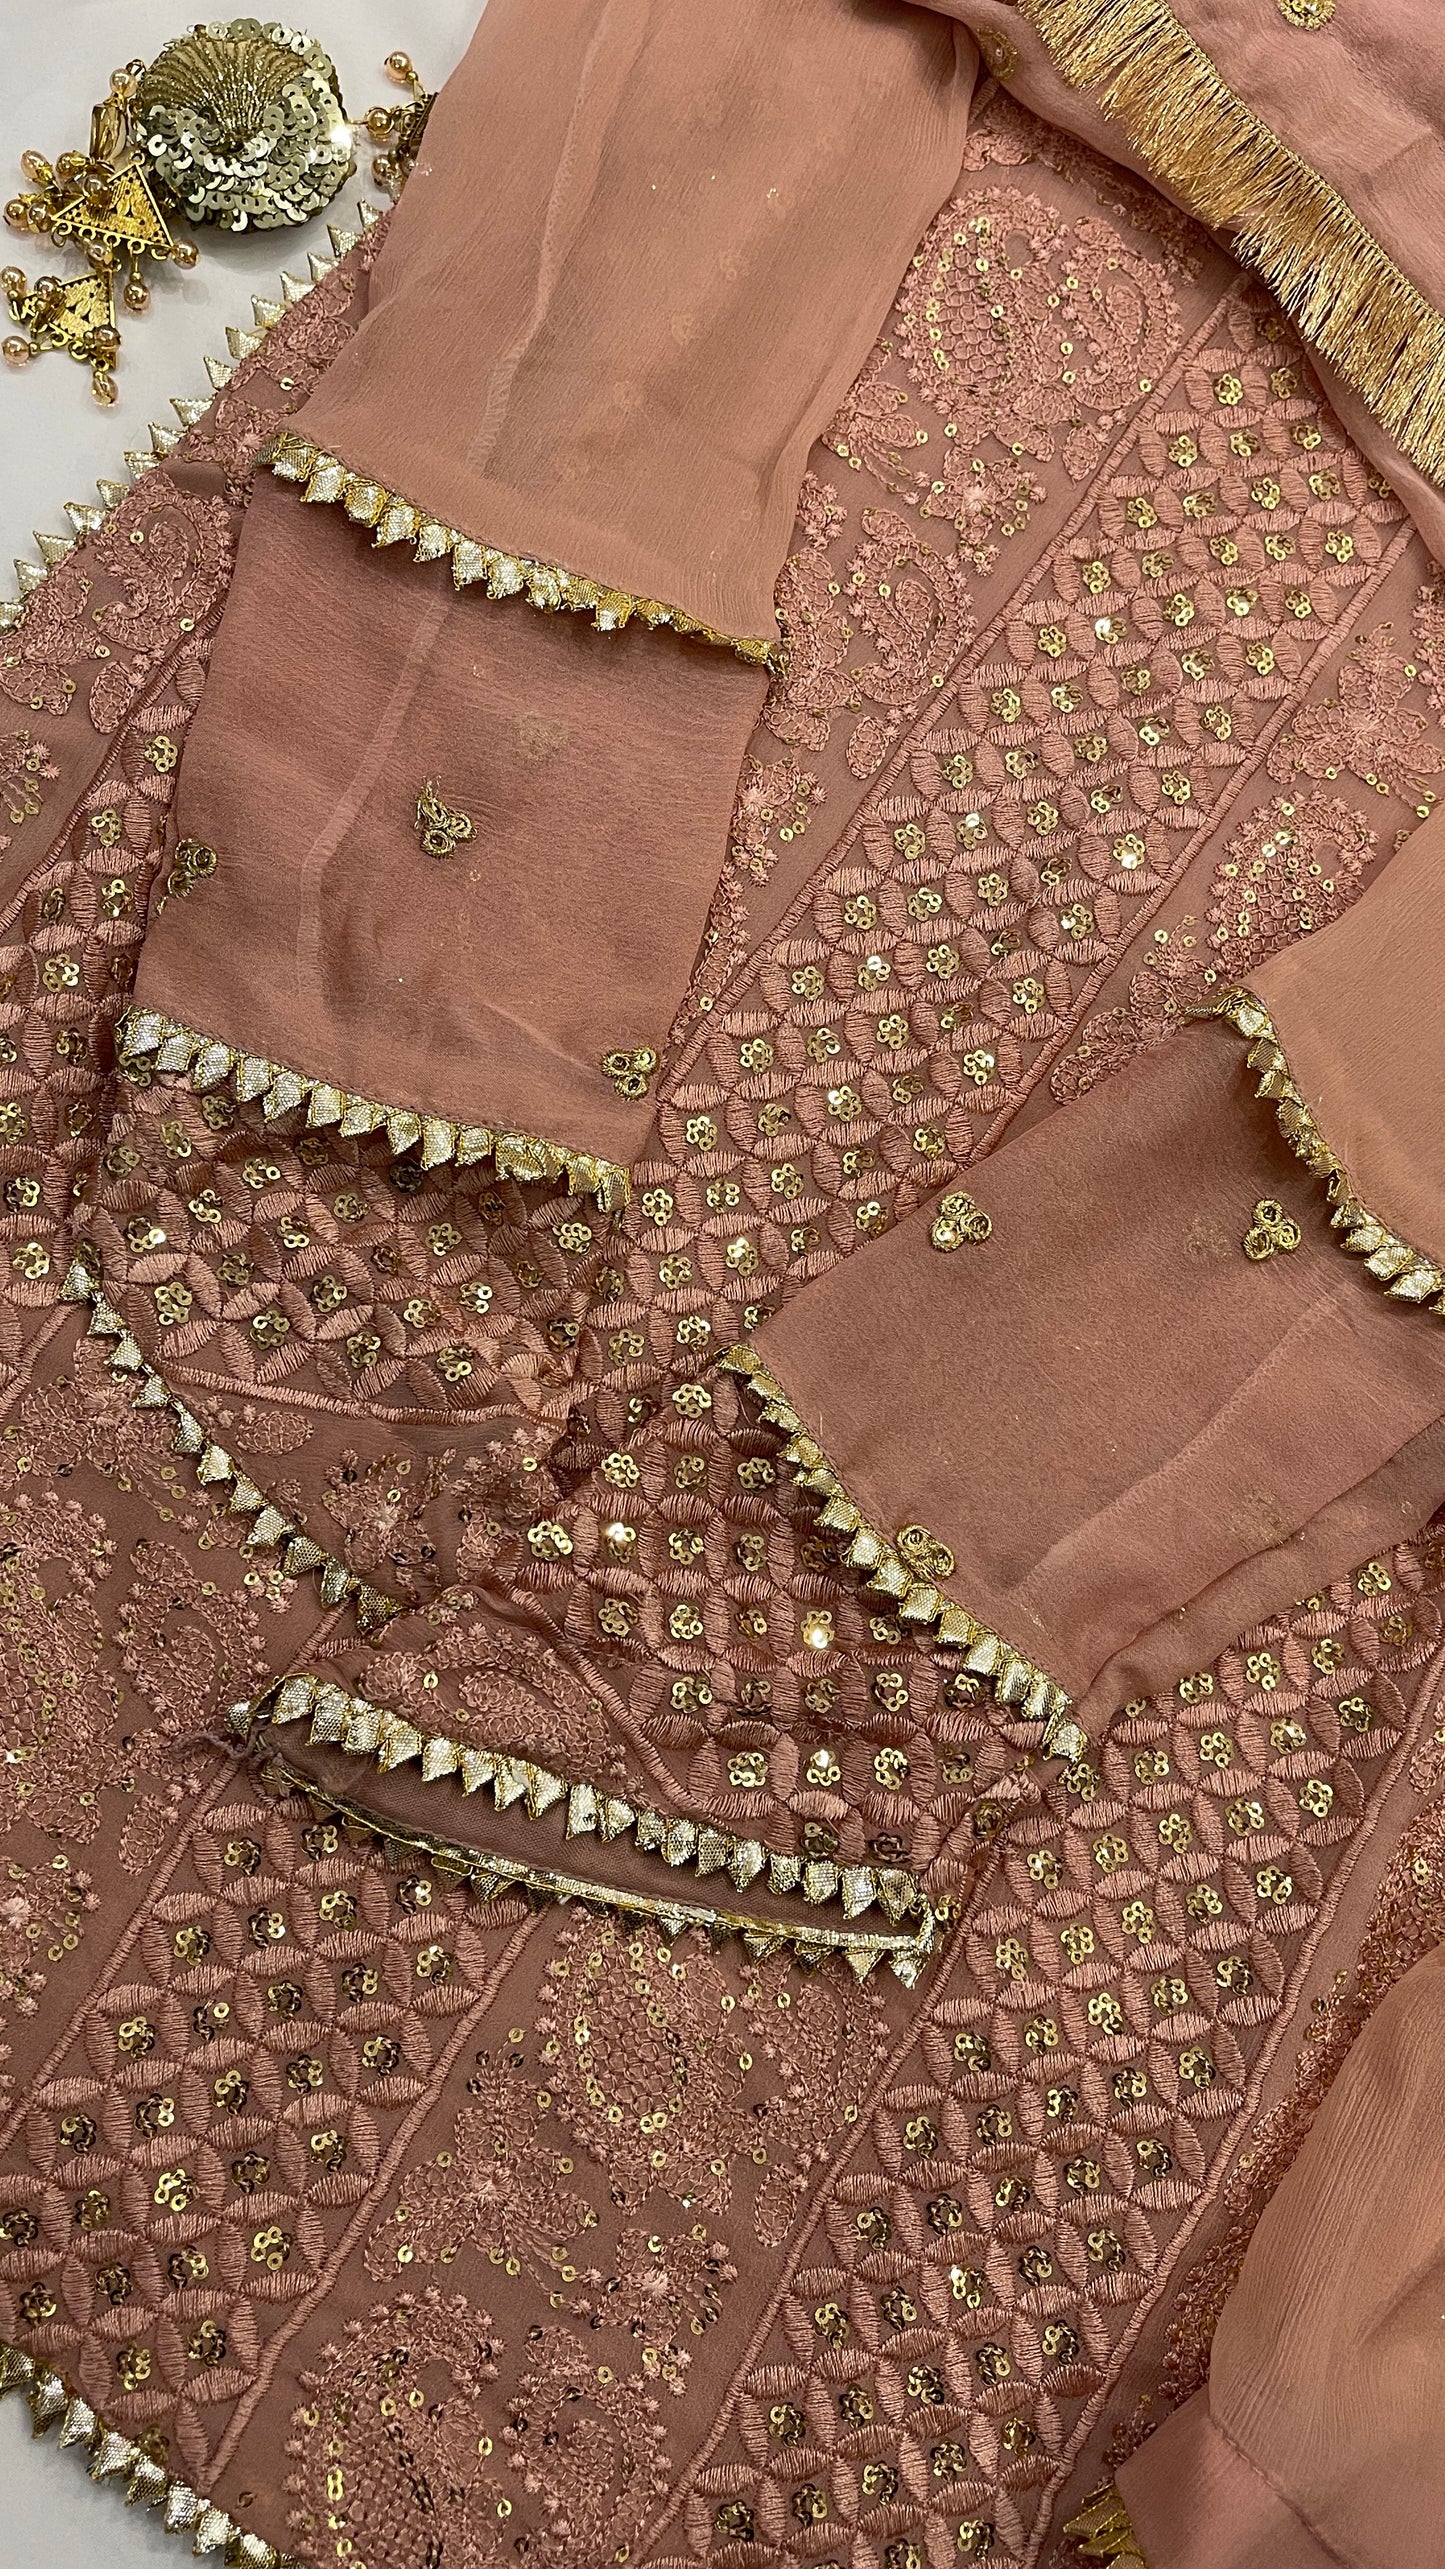 LANA - Blush Pink Luxury 3 Piece Chikankari Chiffon Sharara Suit with Pure Chiffon Dupatta